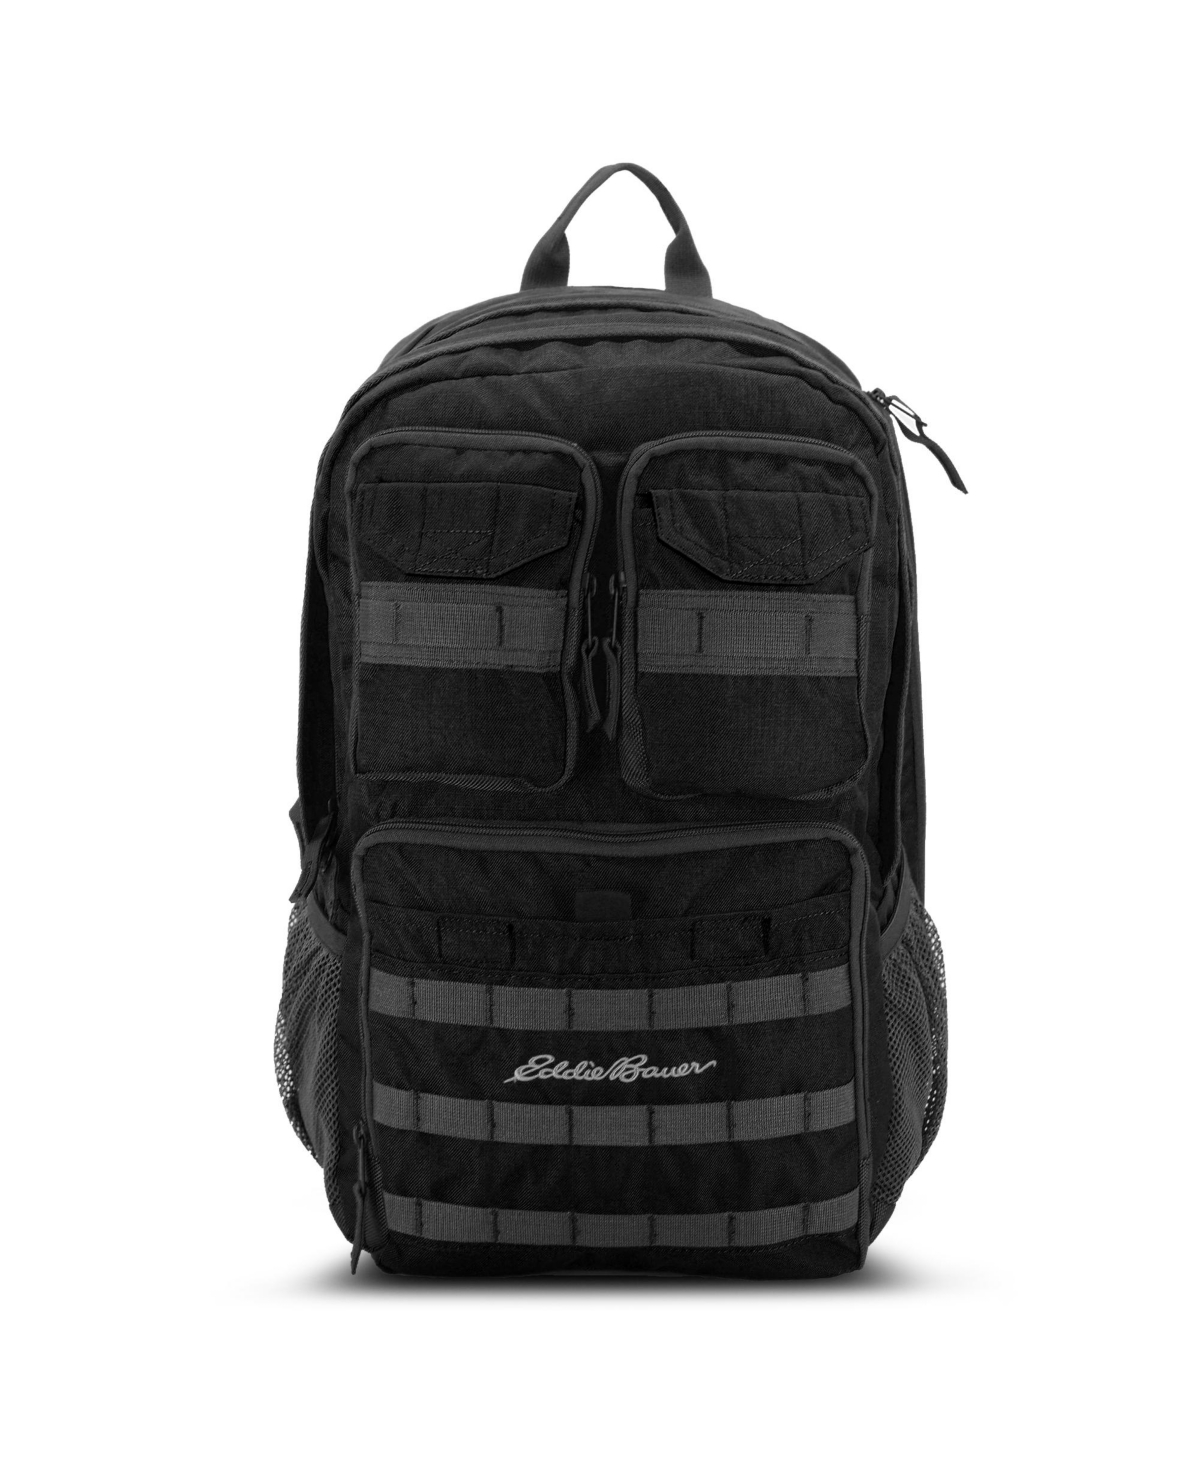 Eddie Bauer Cargo 30 Liters Backpack In Black